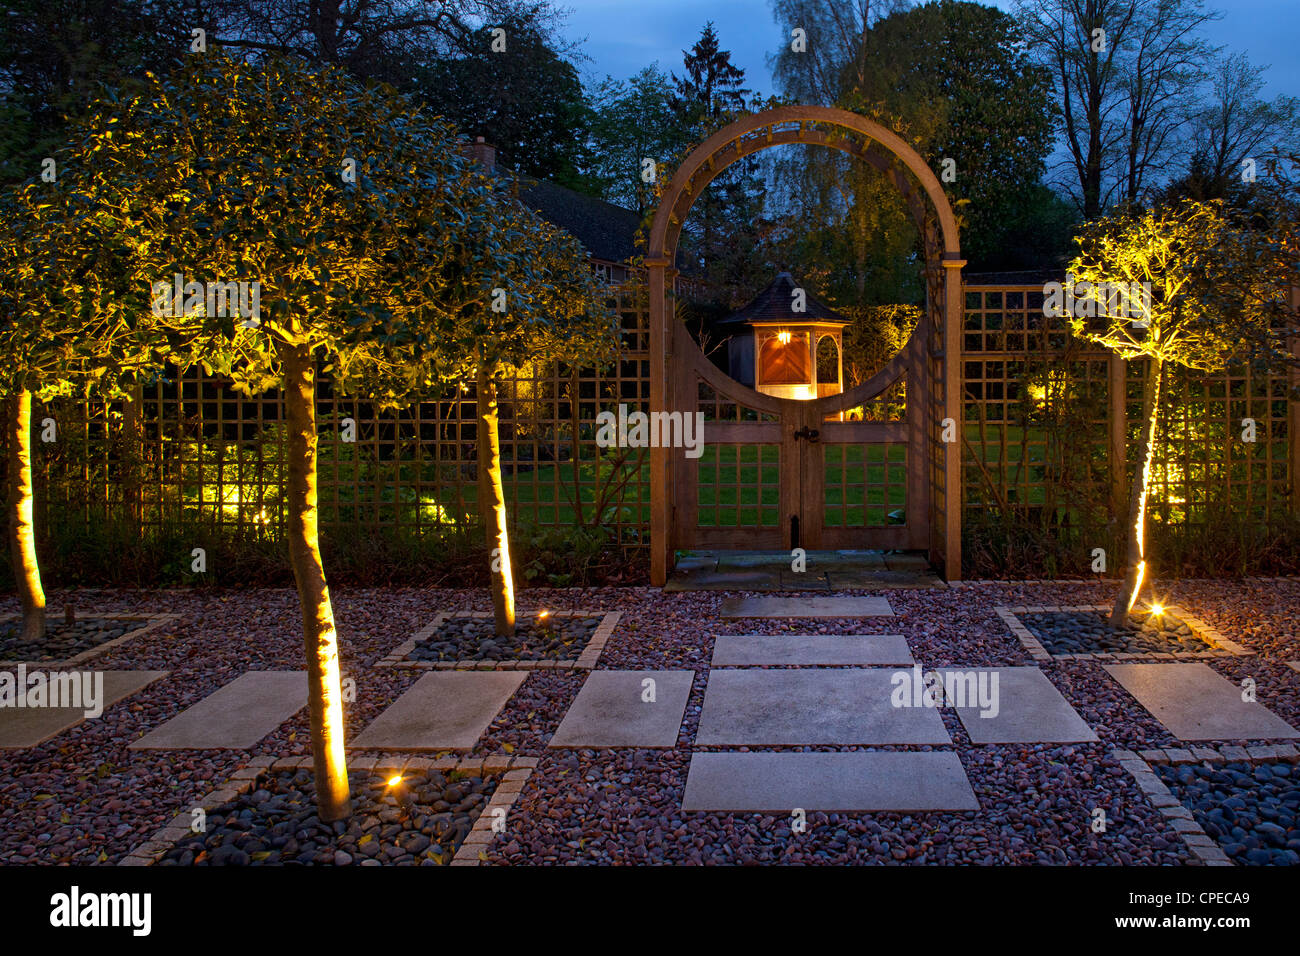 Garden poseen el arco en la noche con los acebos encendidas y puertas que conducen al área parquizada con cenador iluminado Foto de stock